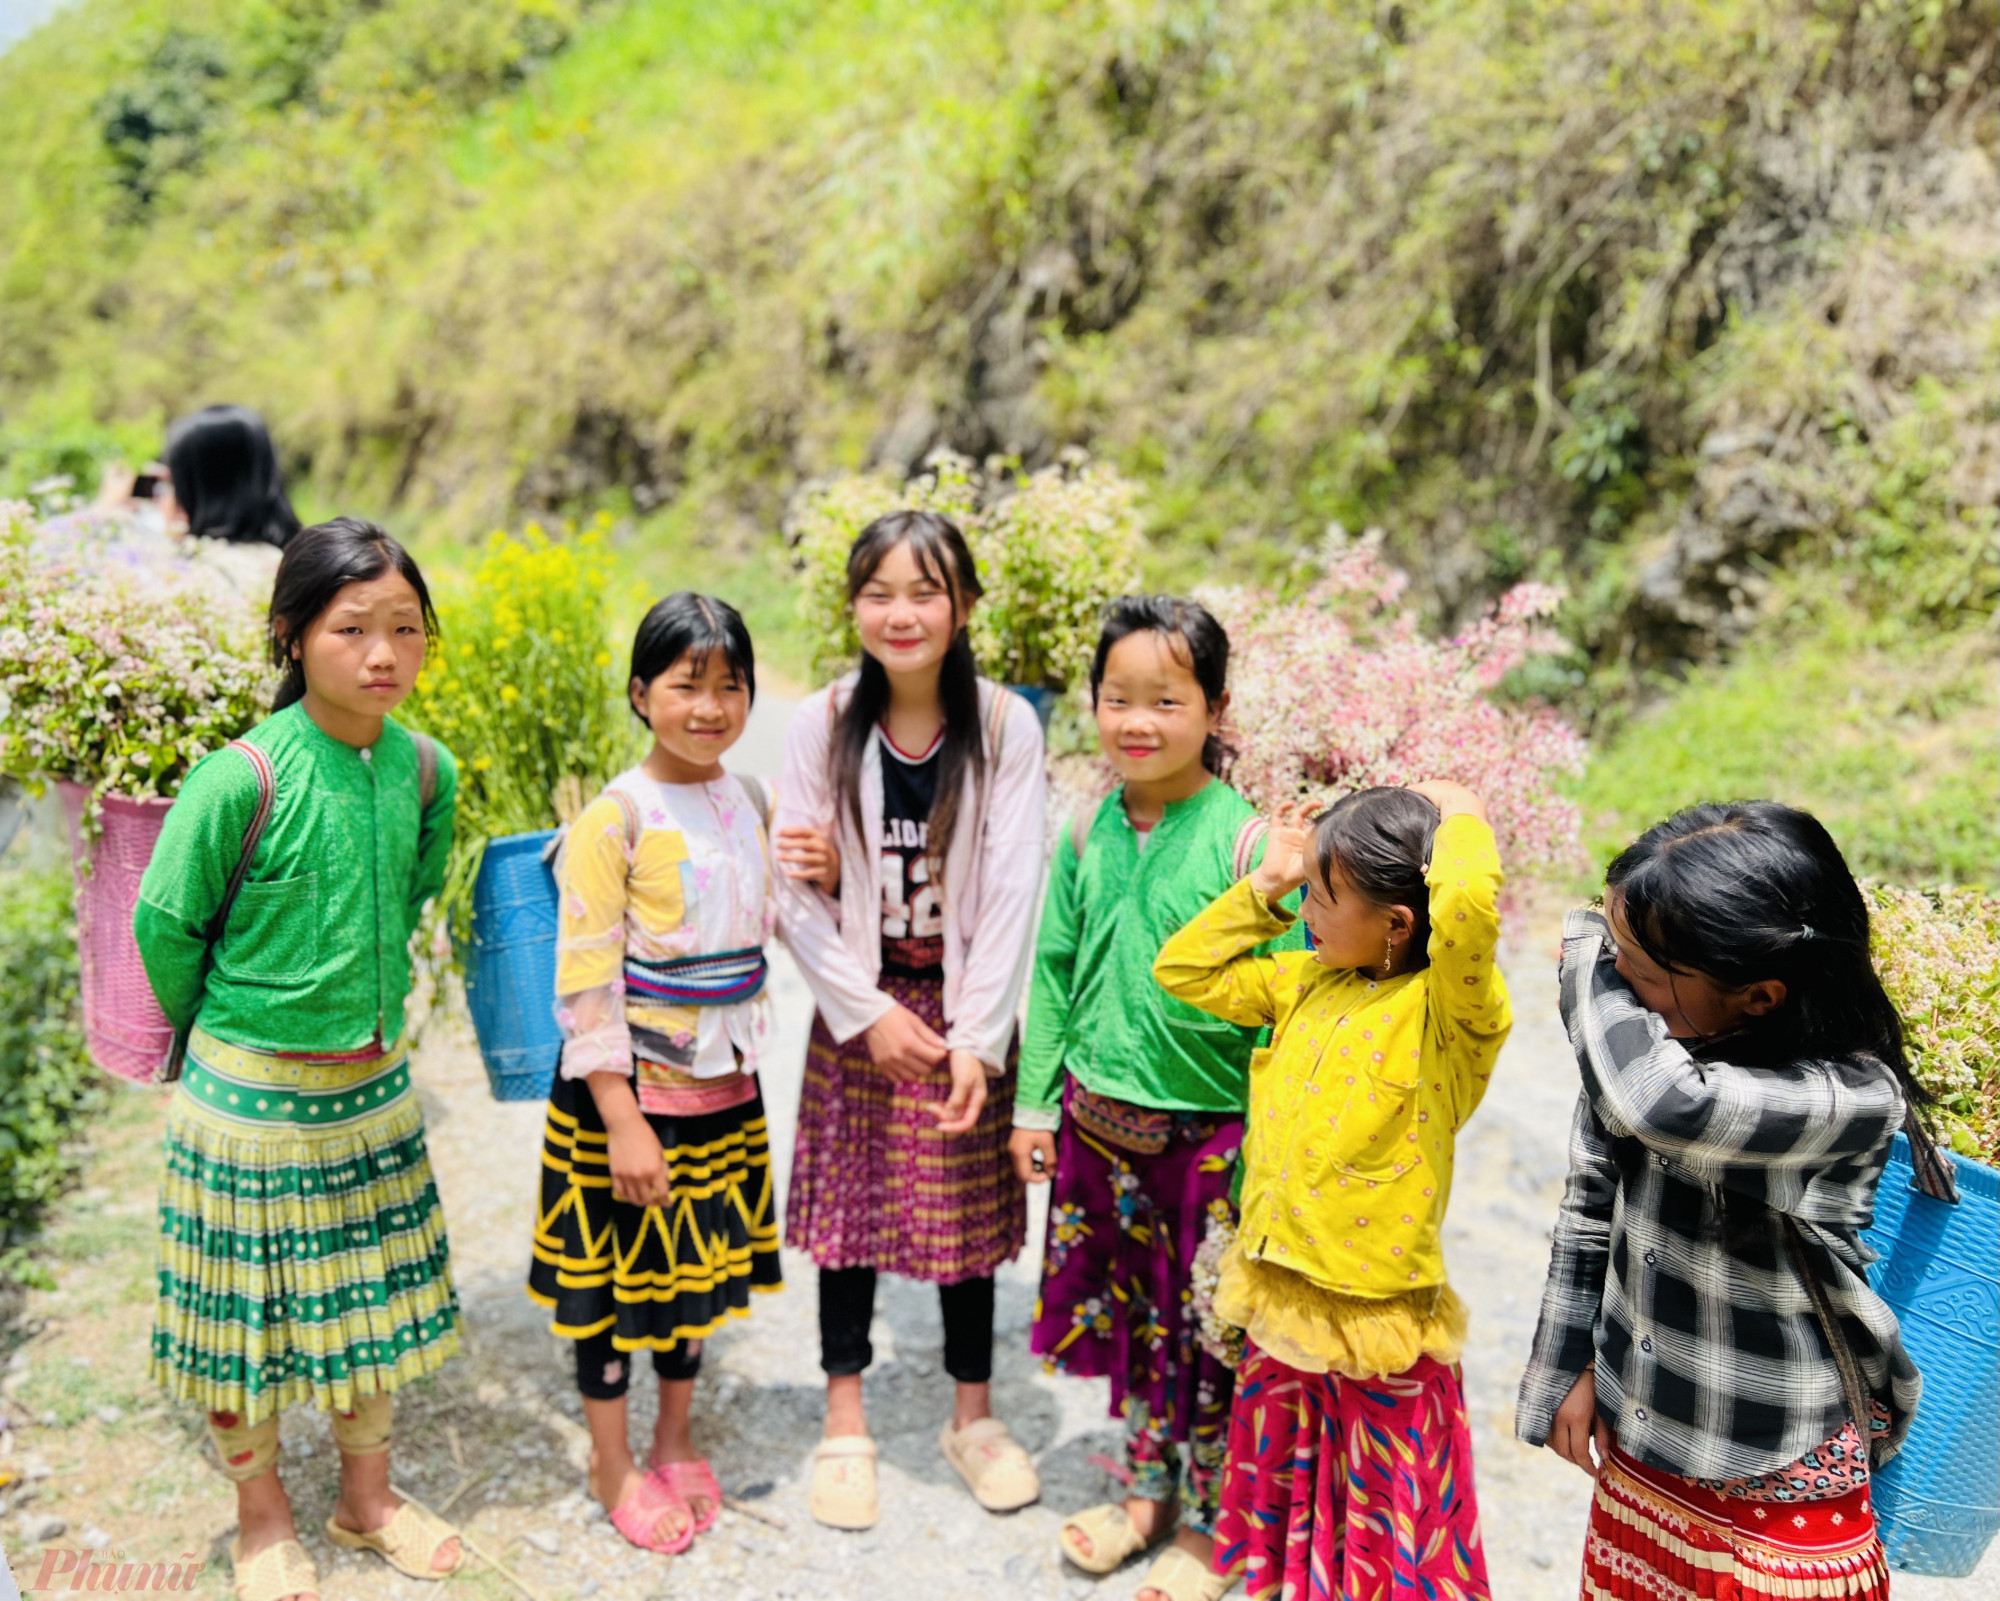 Tại khu vực dốc có những em bé người dân tộc mặc những bộ trang phục sặc sỡ để chụp ảnh cùng du khách.